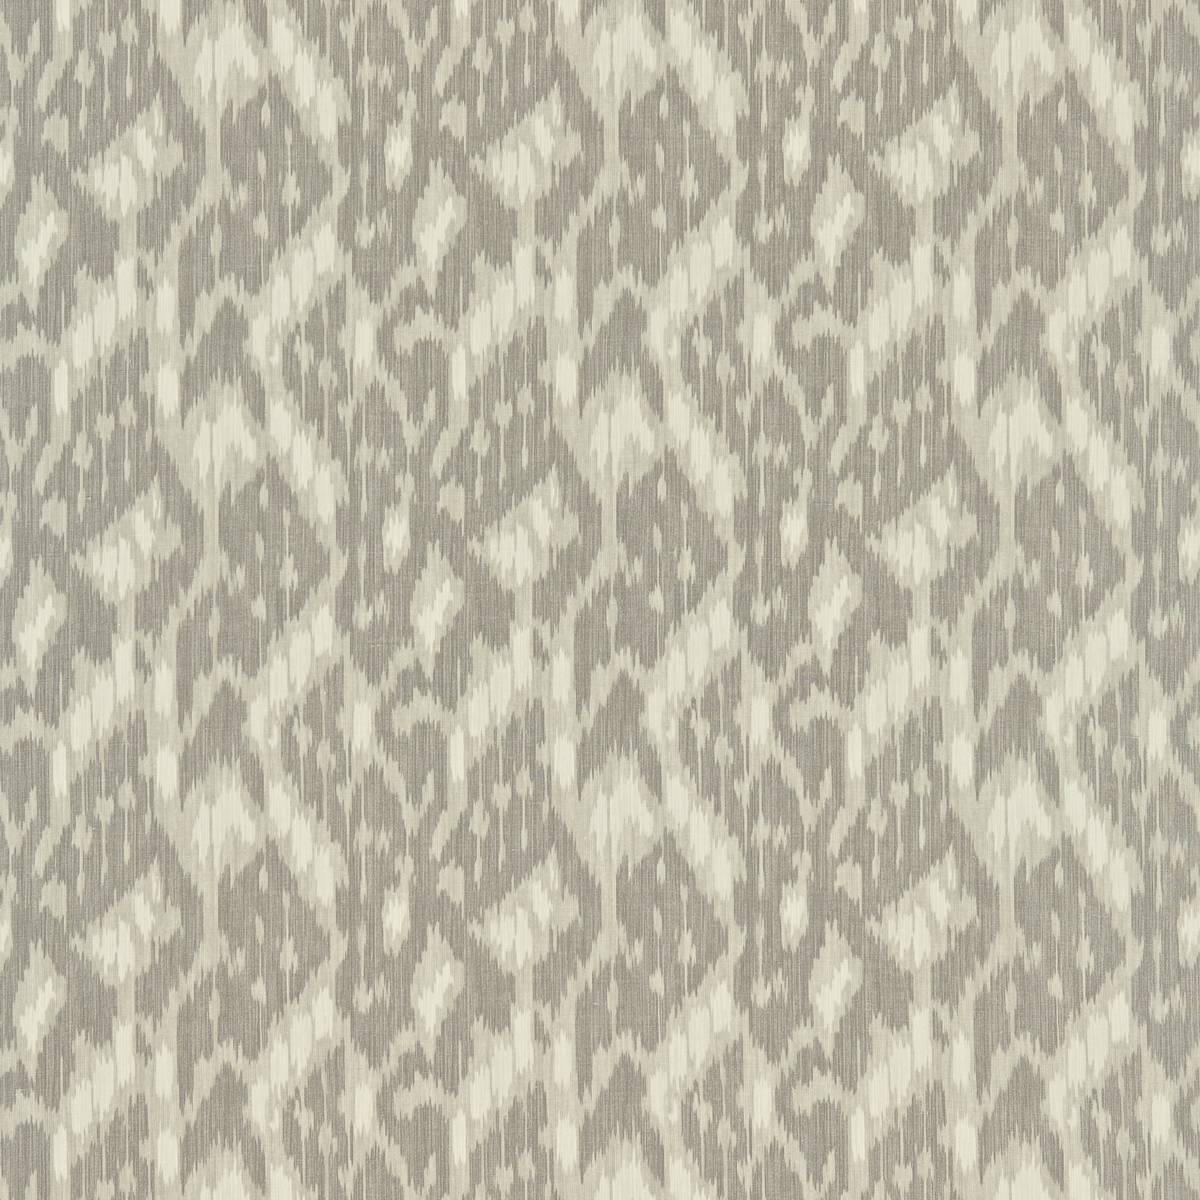 Simla Linen Fabric by Zoffany